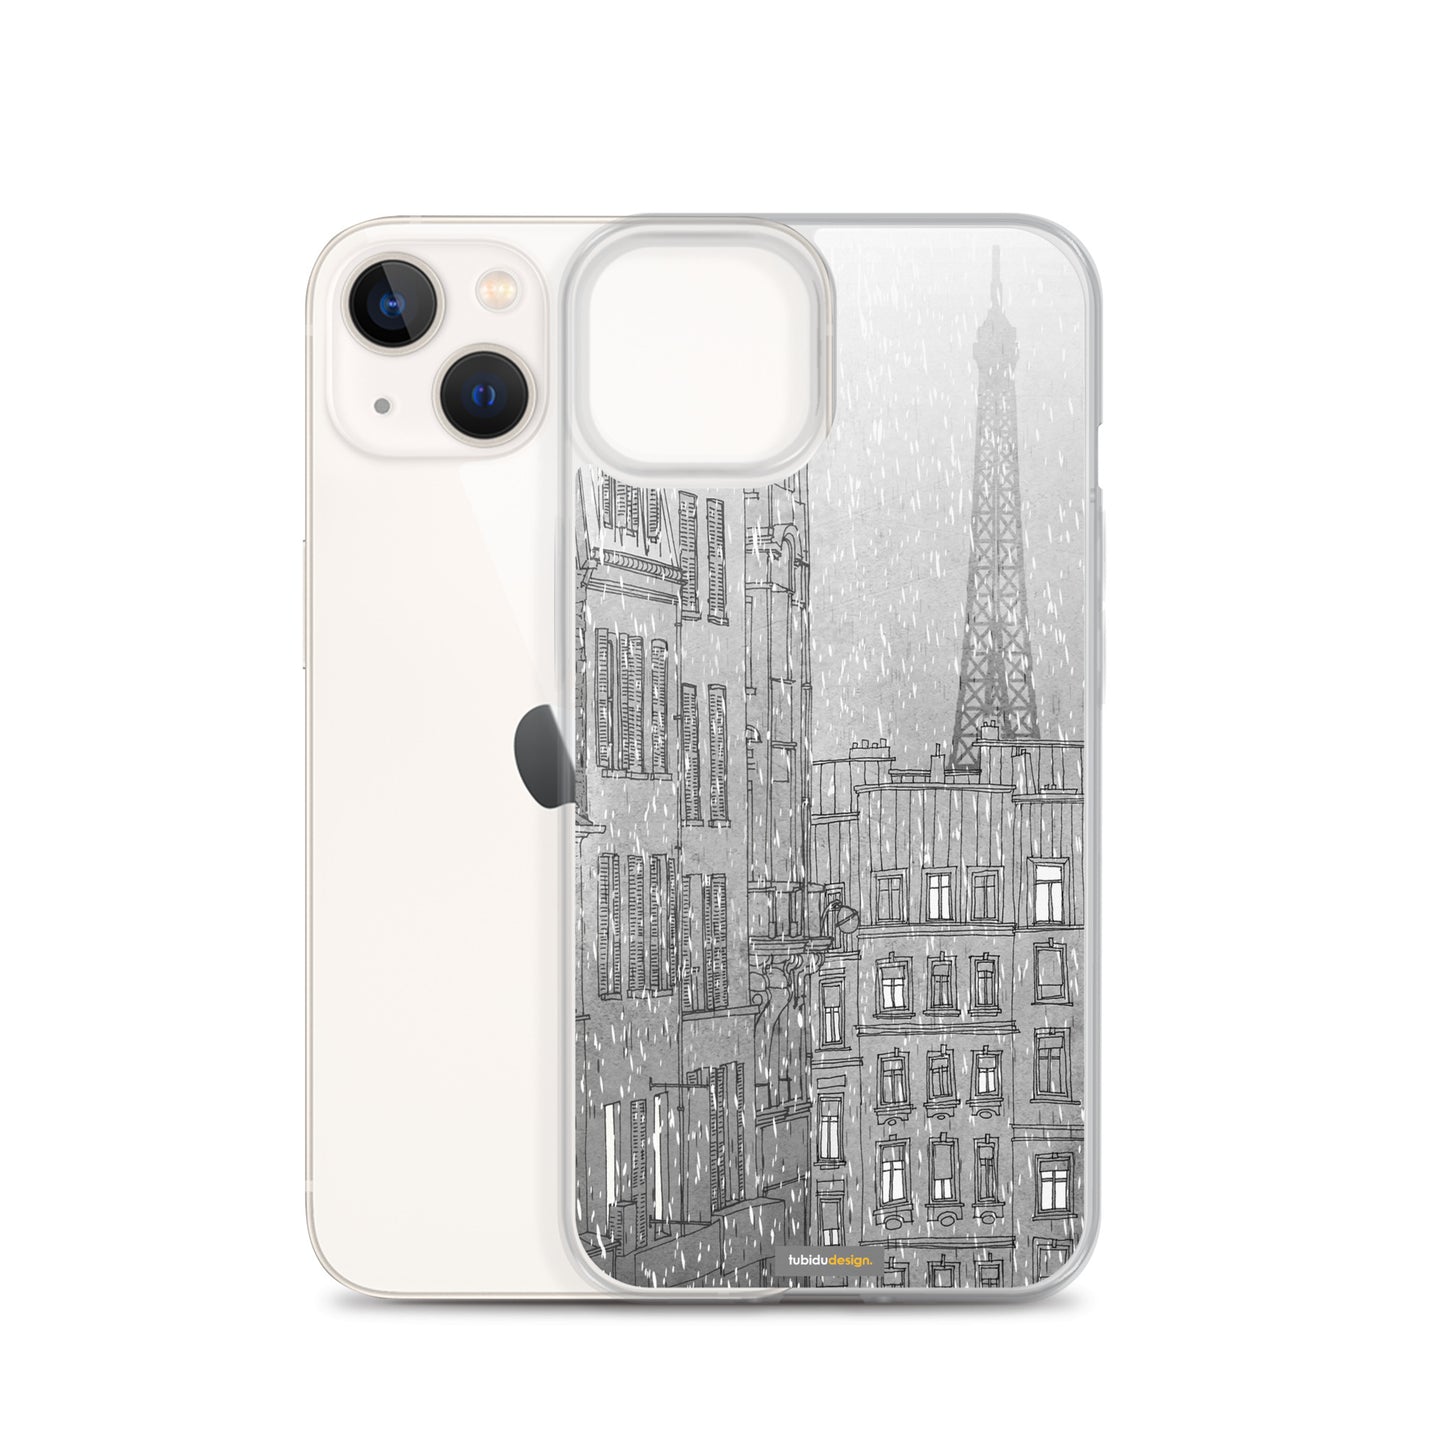 Paris in winter - Illustrated iPhone Case